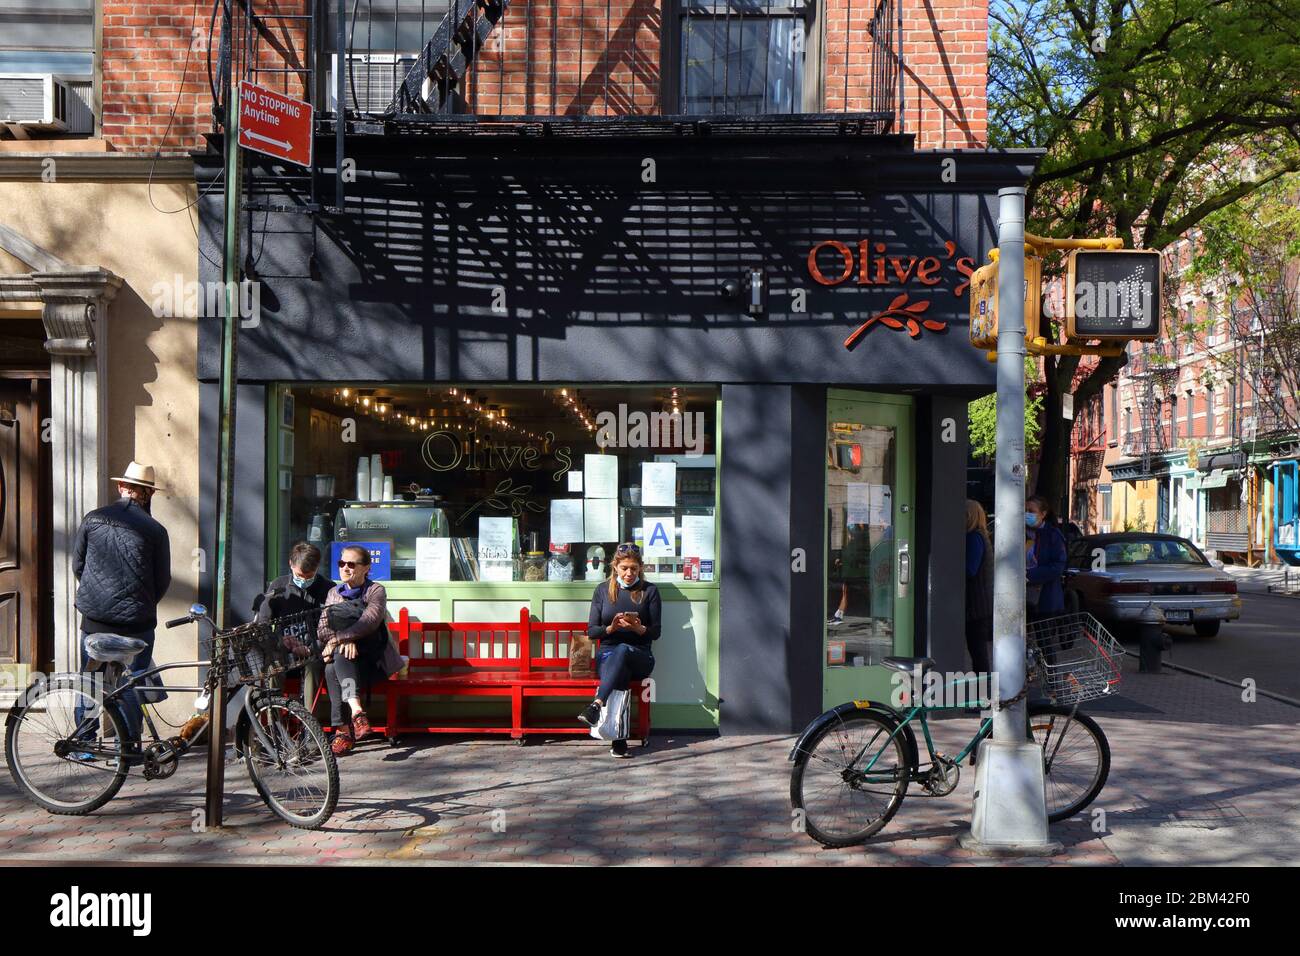 Olive's, 191 Prince St, New York, NY. Escaparate exterior de una tienda de sándwiches gourmet y cafetería en el barrio SoHo de Manhattan. Foto de stock